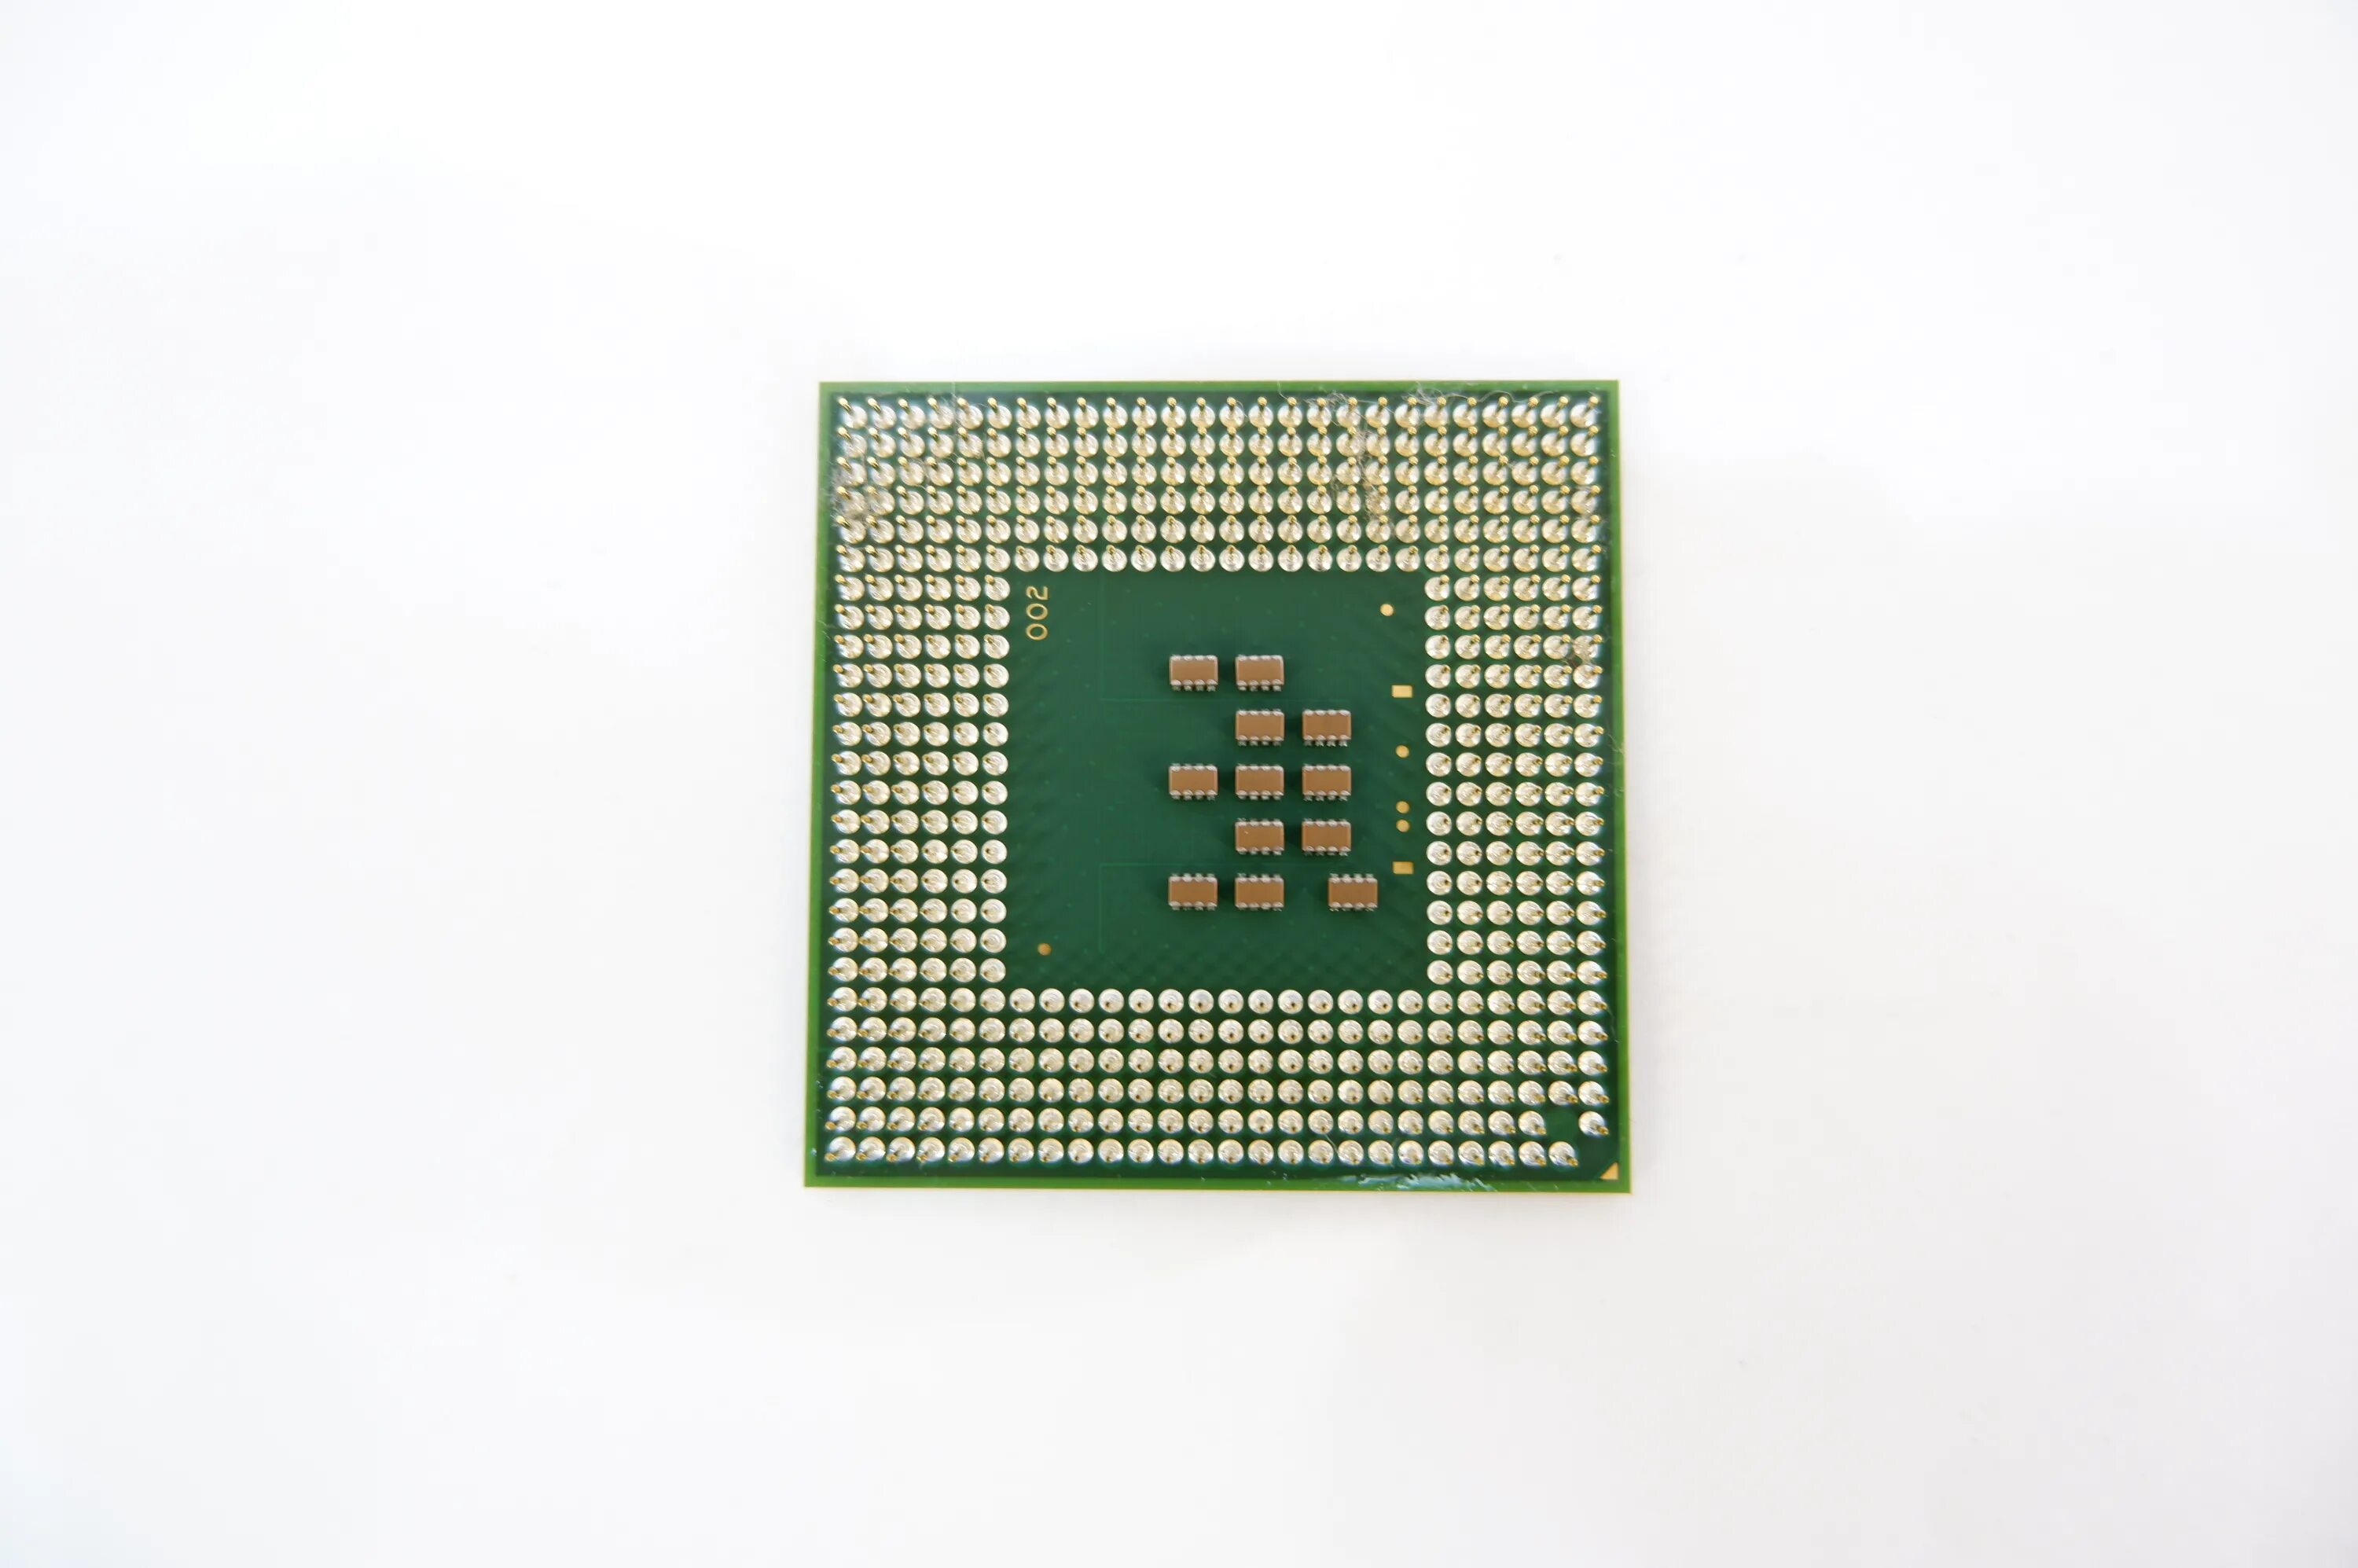 Процессор Intel 478 Socket. Процессор Intel® Pentium® m 725. Celeron sl68p. Pentium m (0,6—2,6 ГГЦ) (Dothan). Модель процессора ноутбука